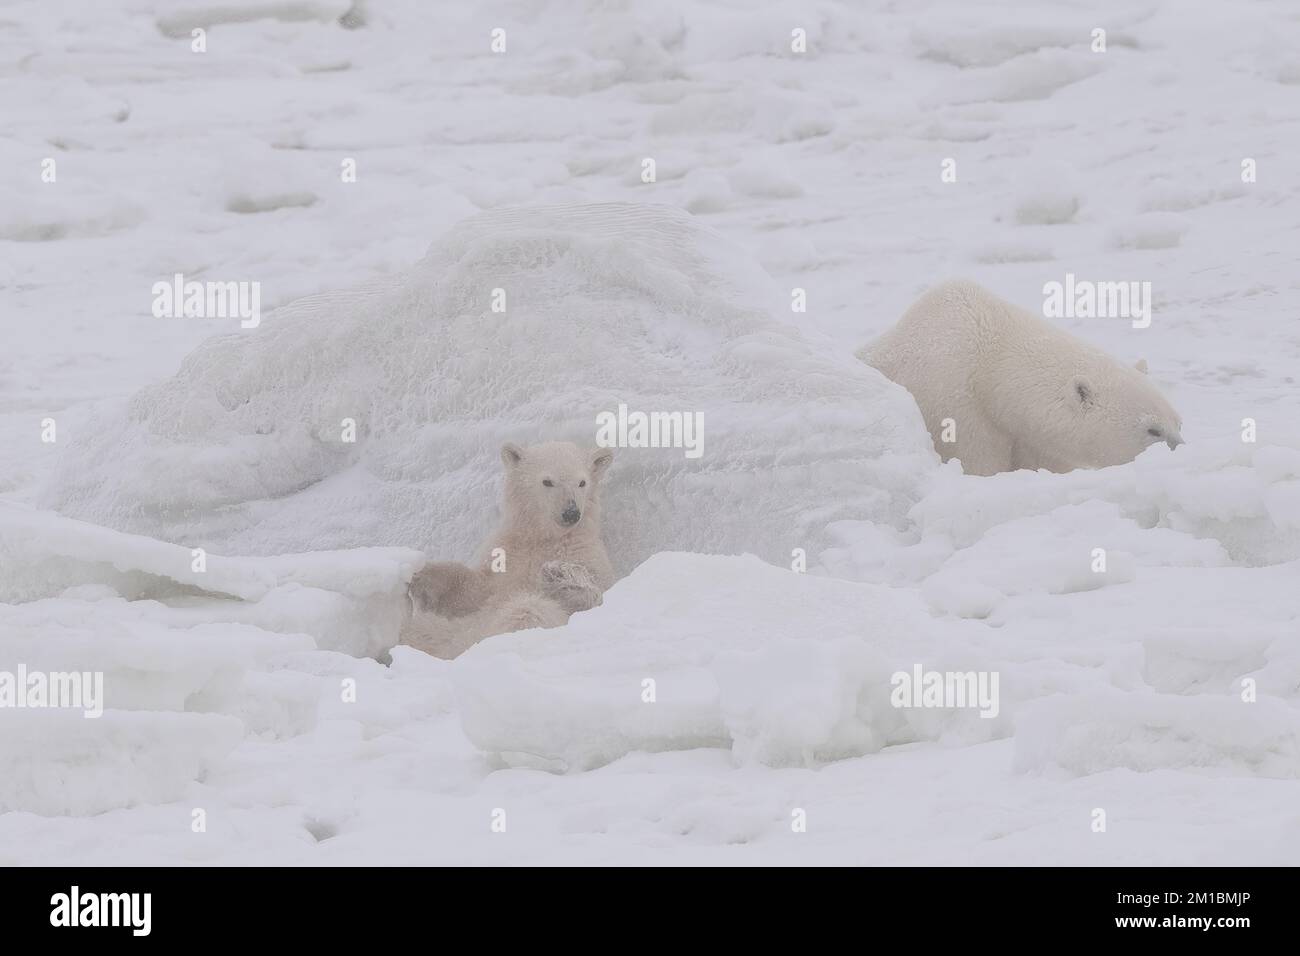 Ours polaire ludique Cub, baie d'Hudson, MB Banque D'Images